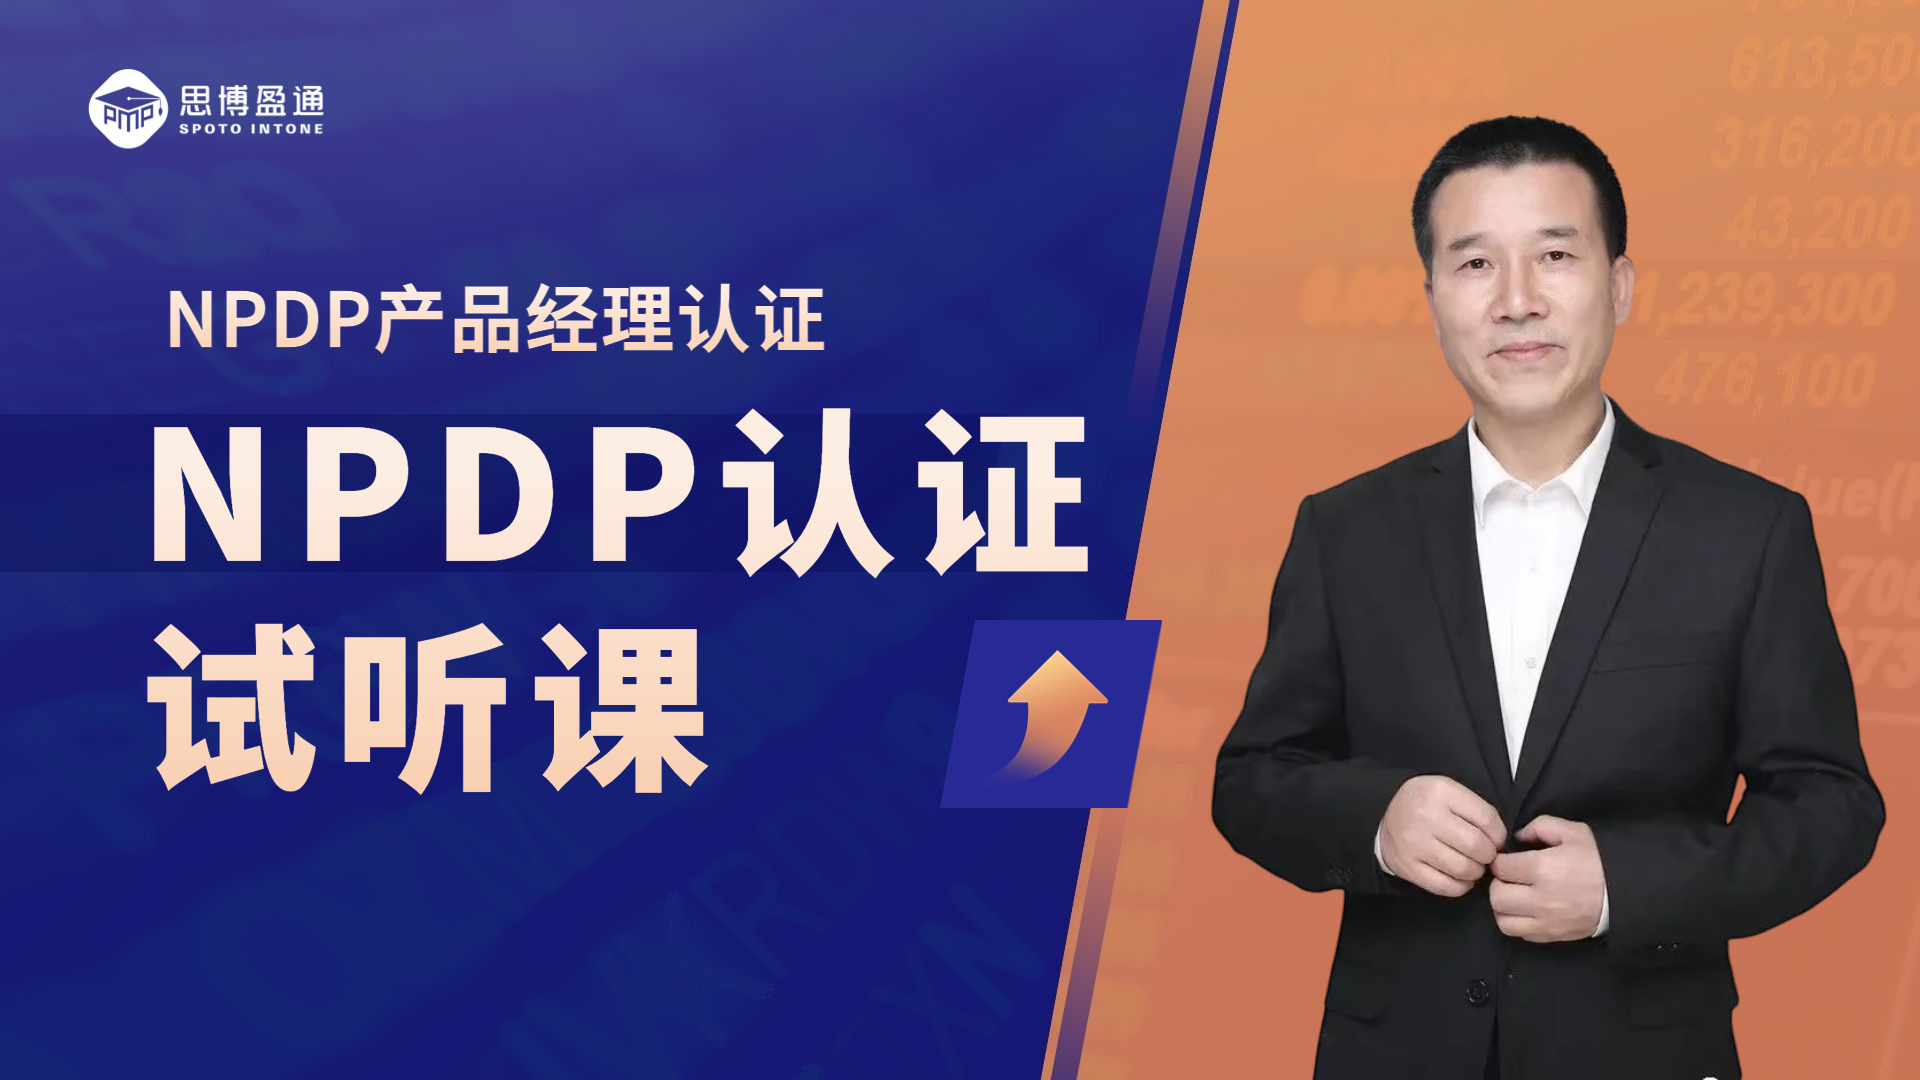 NPDP产品经理国际资格认证｜试听课